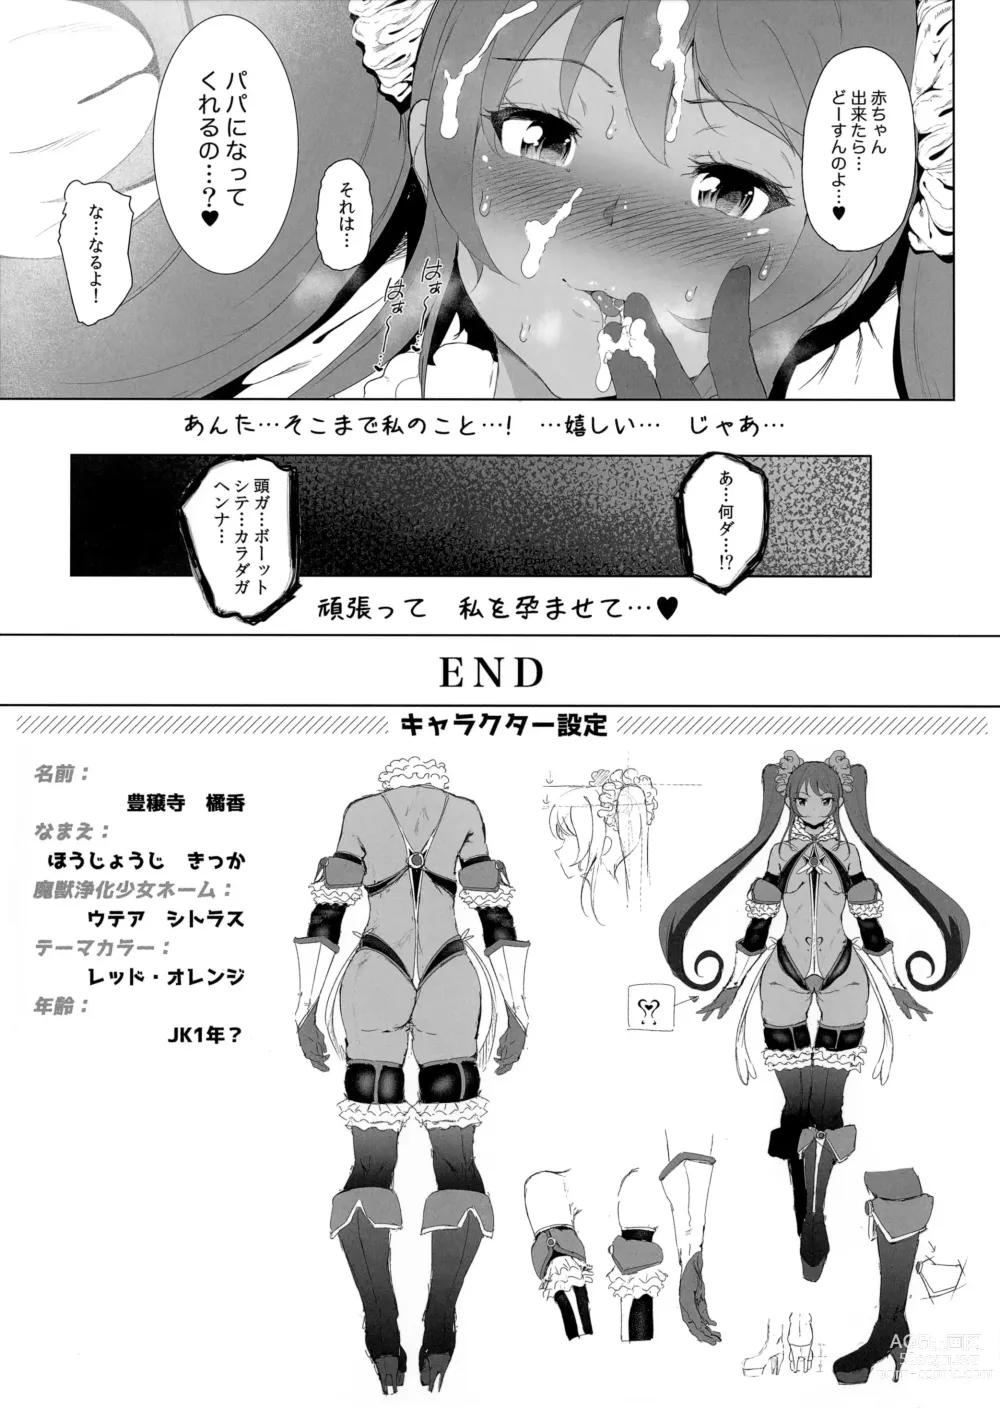 Page 7 of manga Majuu Jouka Shoujo Utea Melonbooks Tokuten Kakioroshi Shousasshi